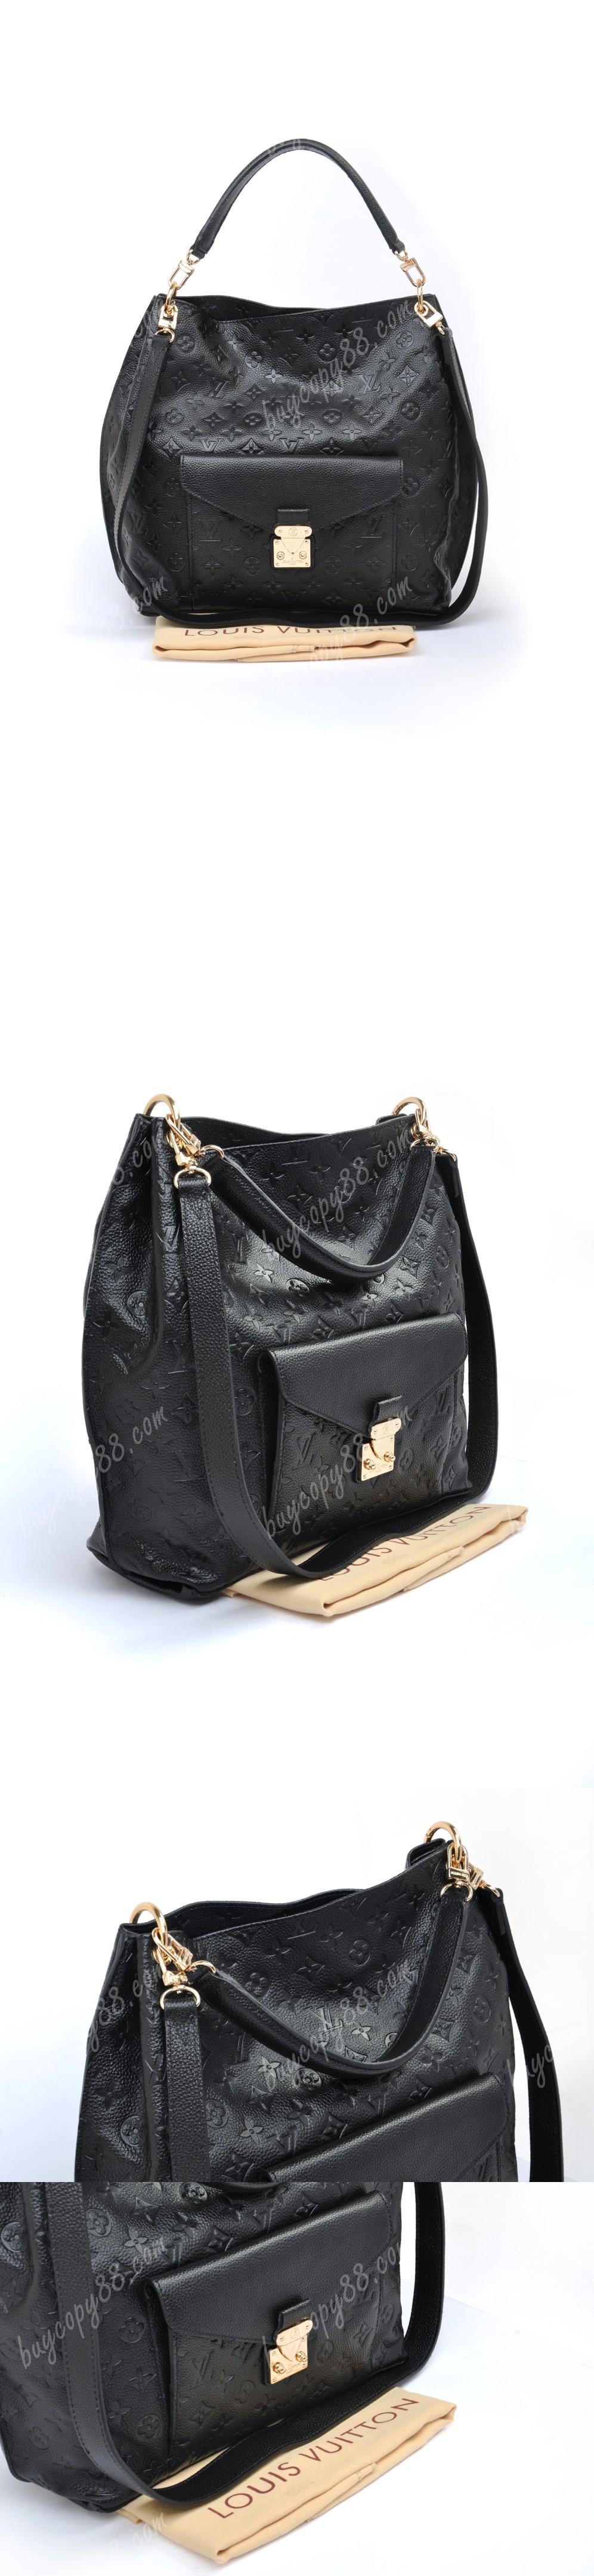 Louis Vuitton Metis Monogram M40781  Bags, Handbags michael kors, Handbag